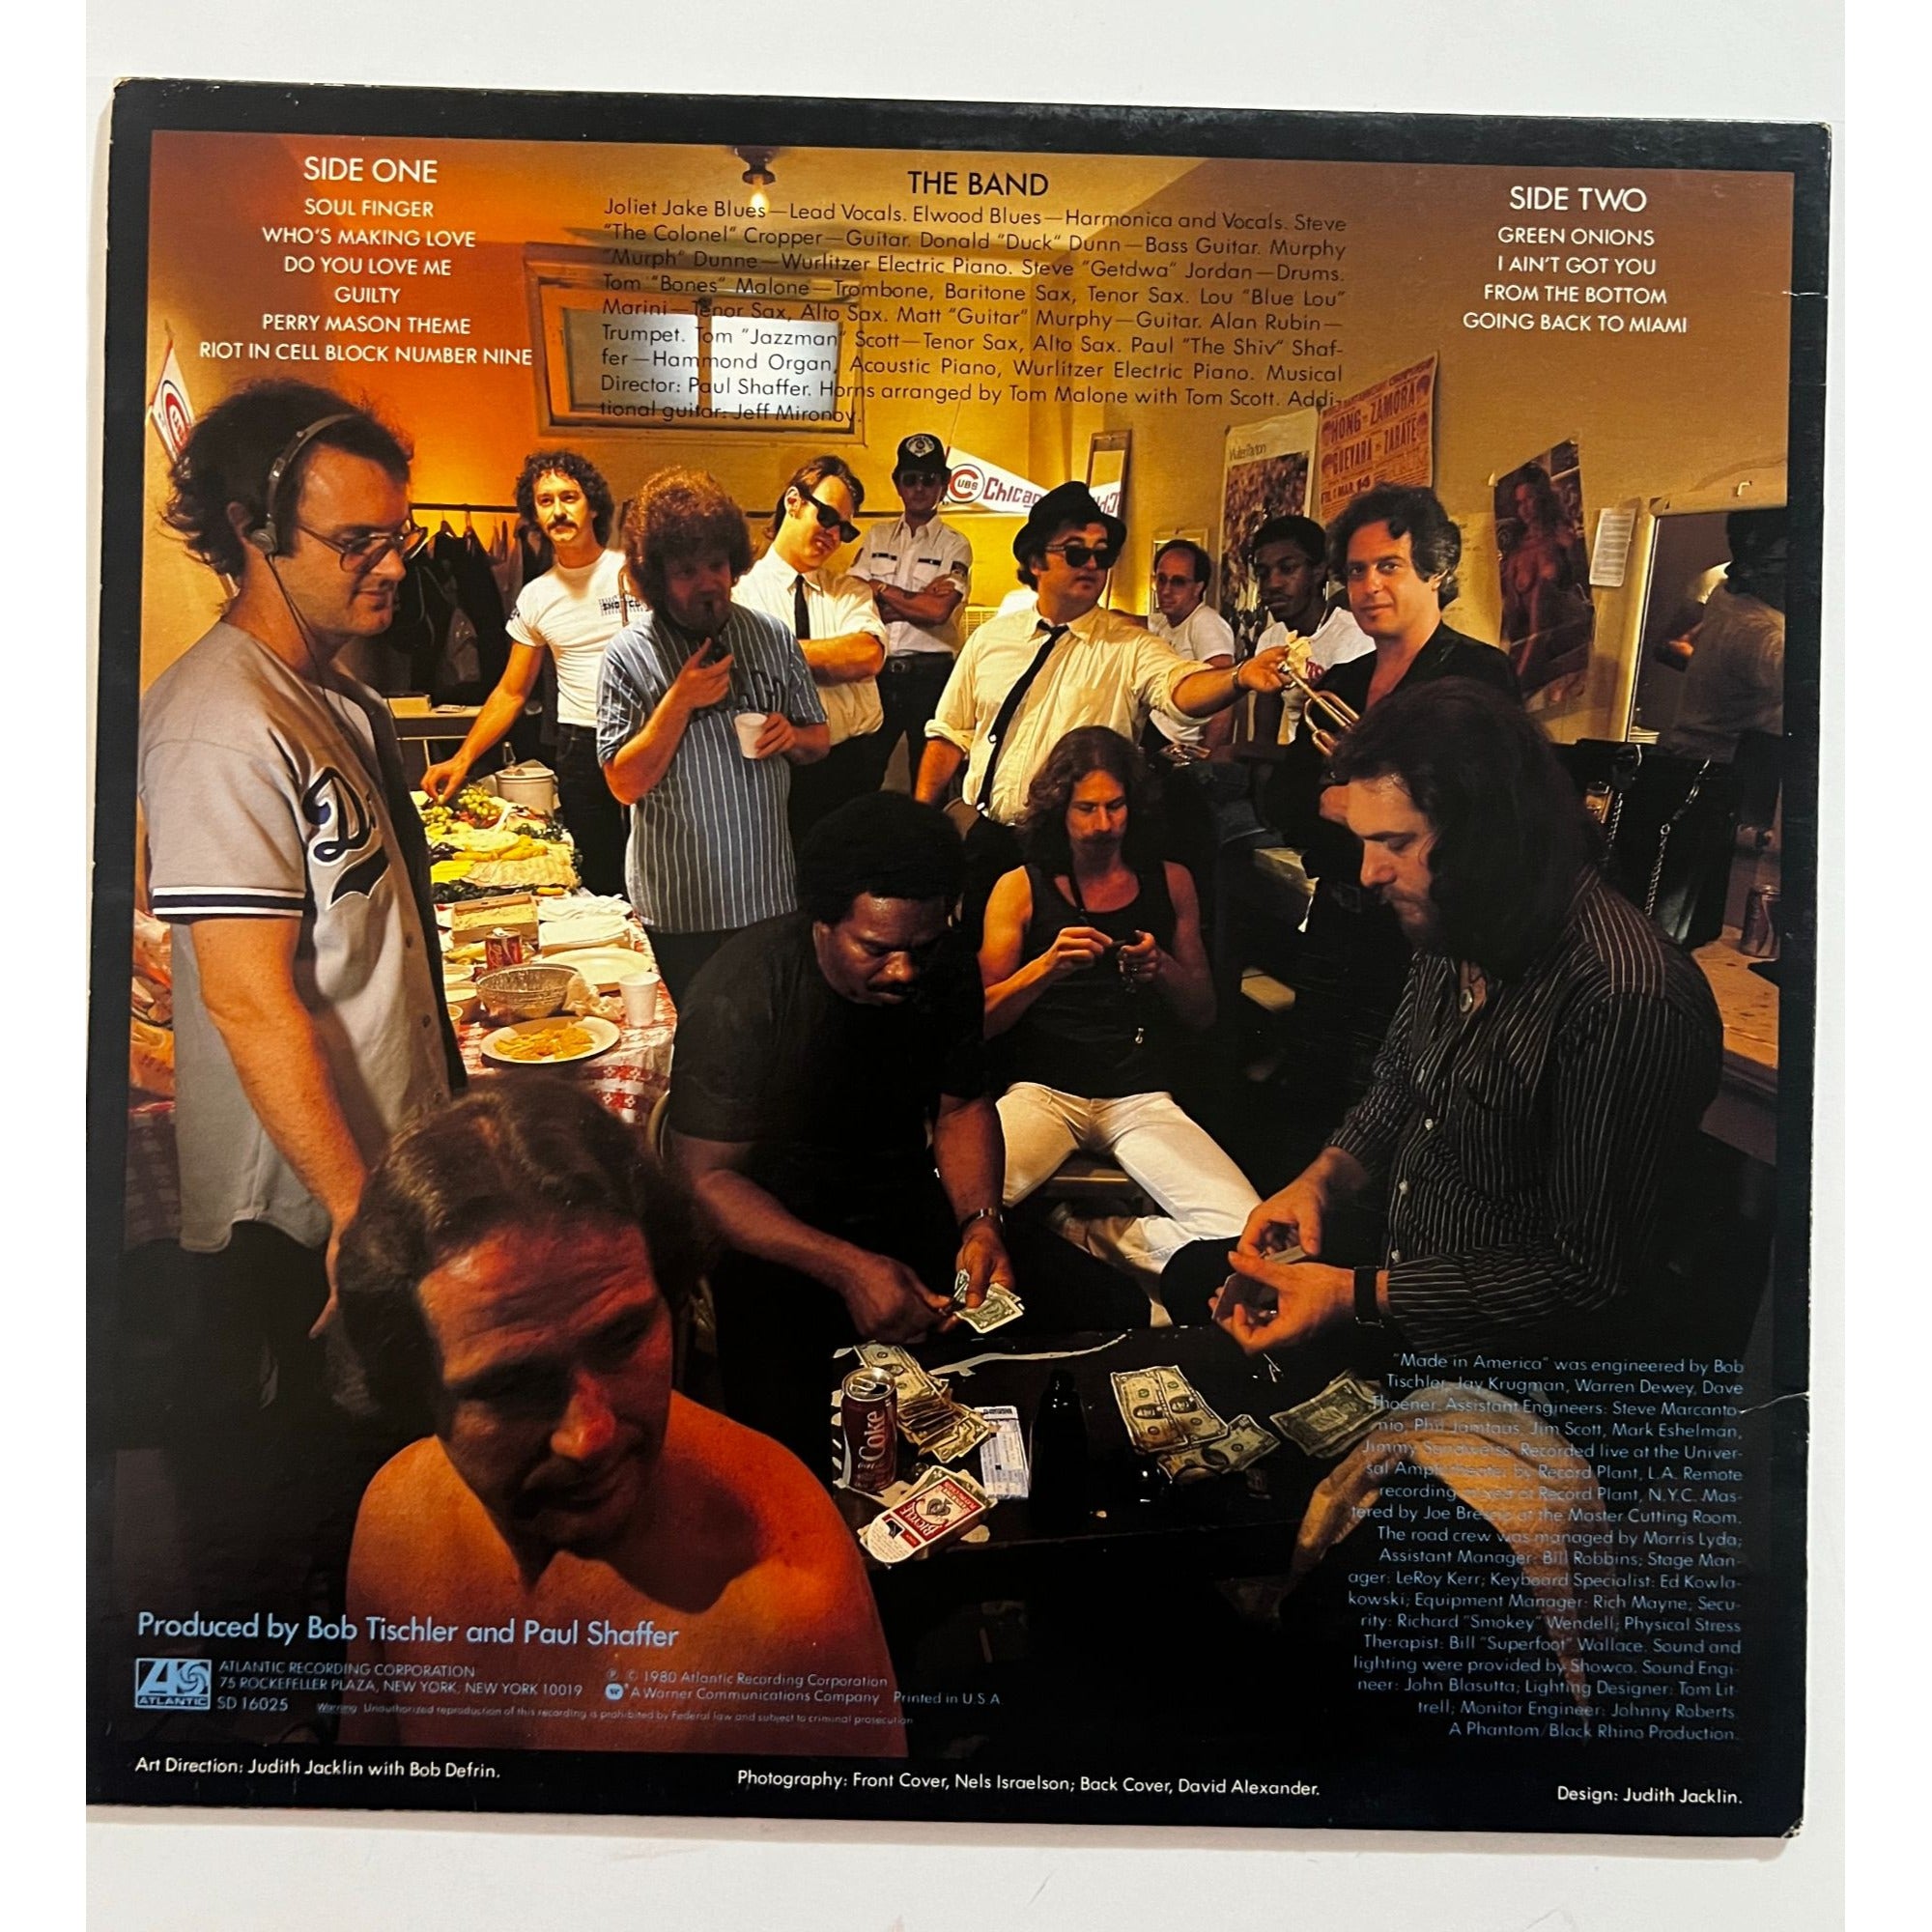 John Belushi Dan Aykroyd Blues Brothers "Made in America" original LP sign with proof